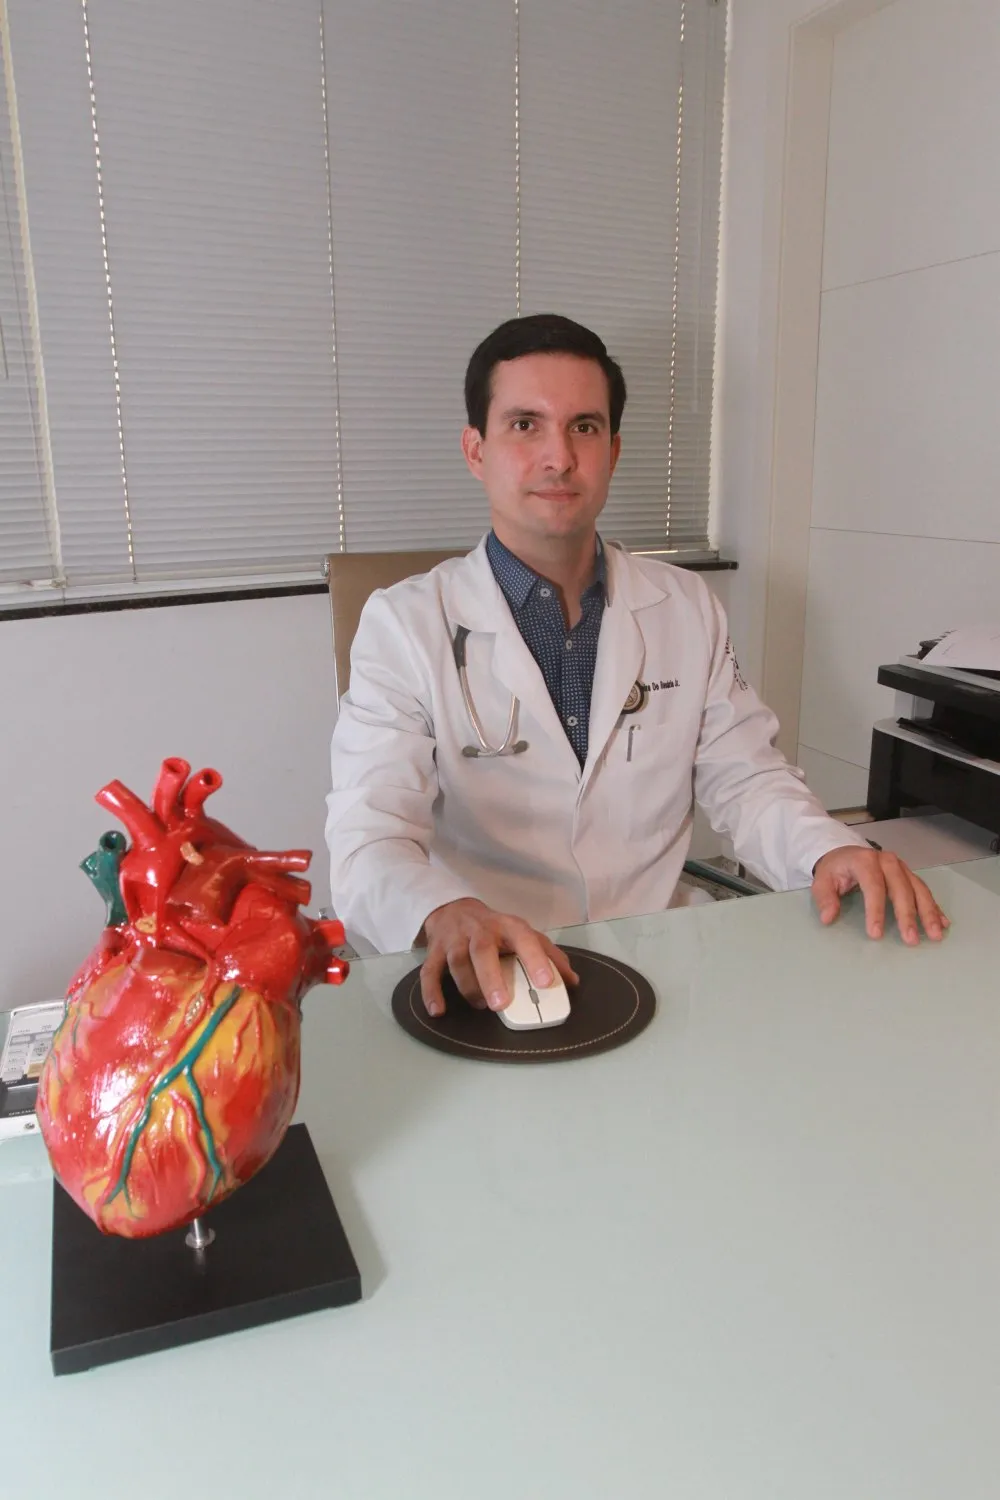 O cardiologista Emílio 
Pereira Junior alerta que é preciso se atentar caso haja mal-estar durante a prática de exercício físico